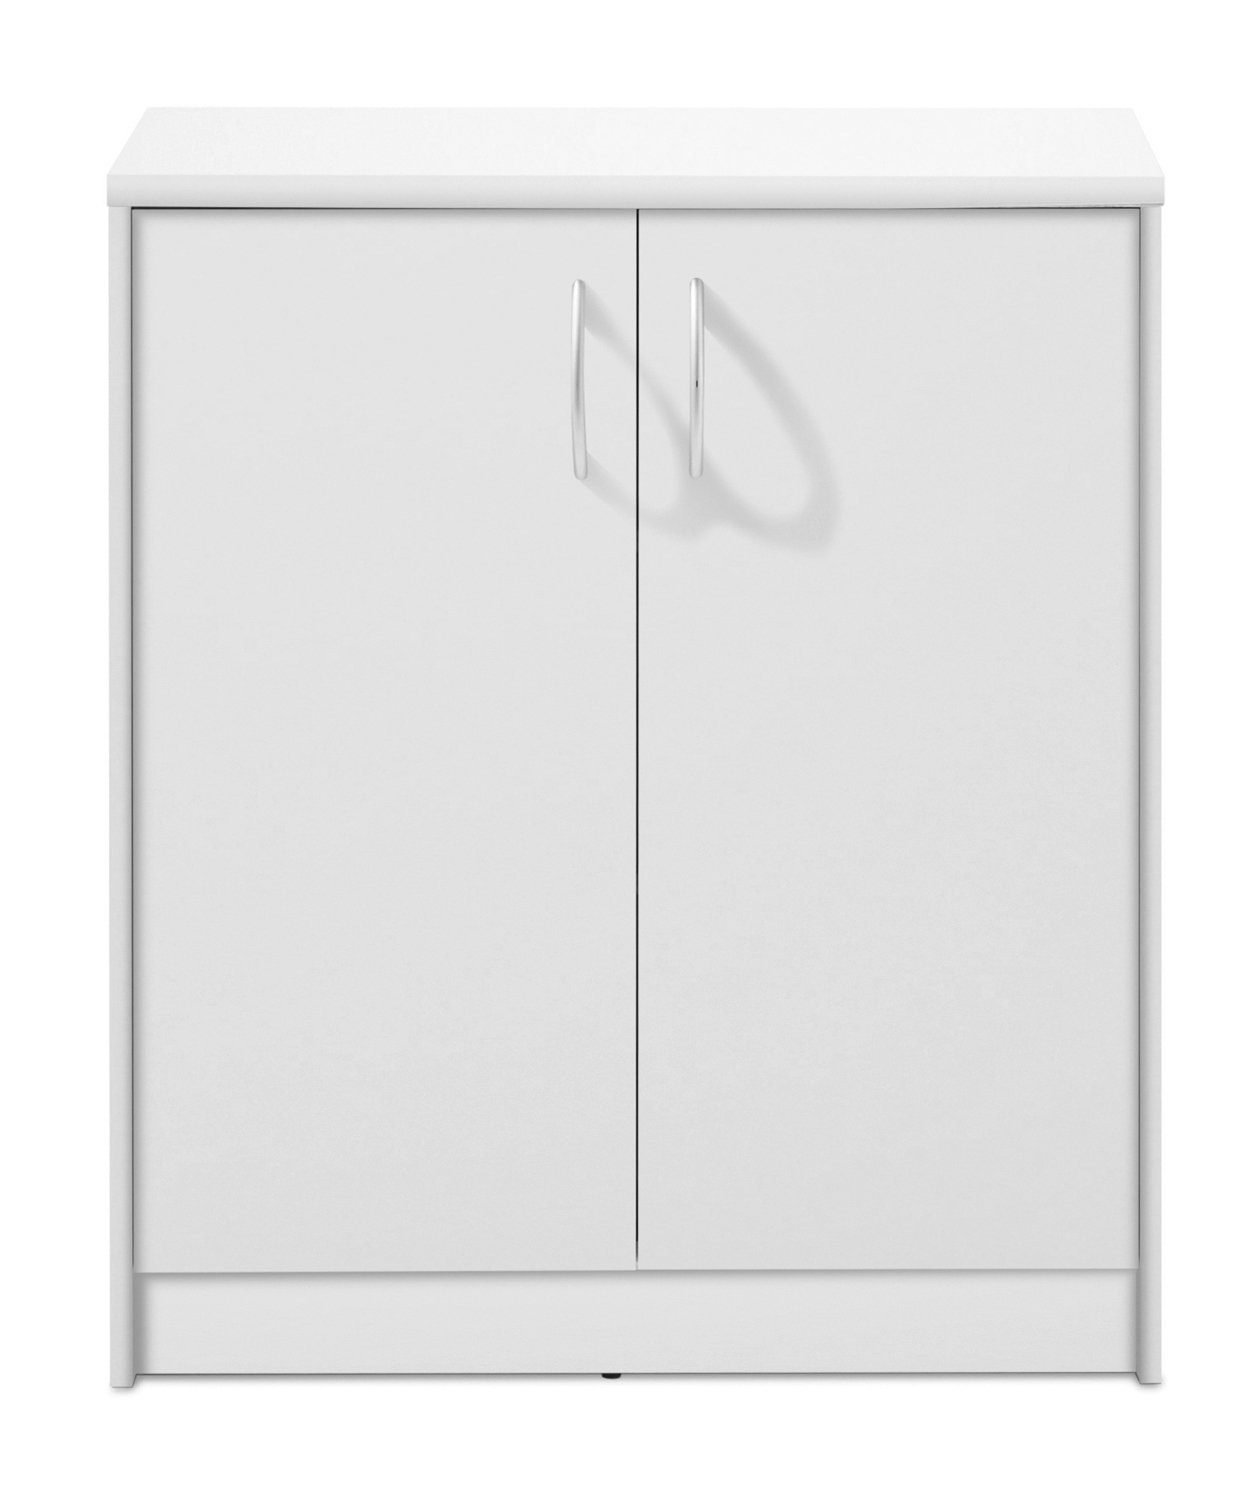 Kommode OPTIMUS, B 74 x H 86 cm, Weiß matt, 2 Türen